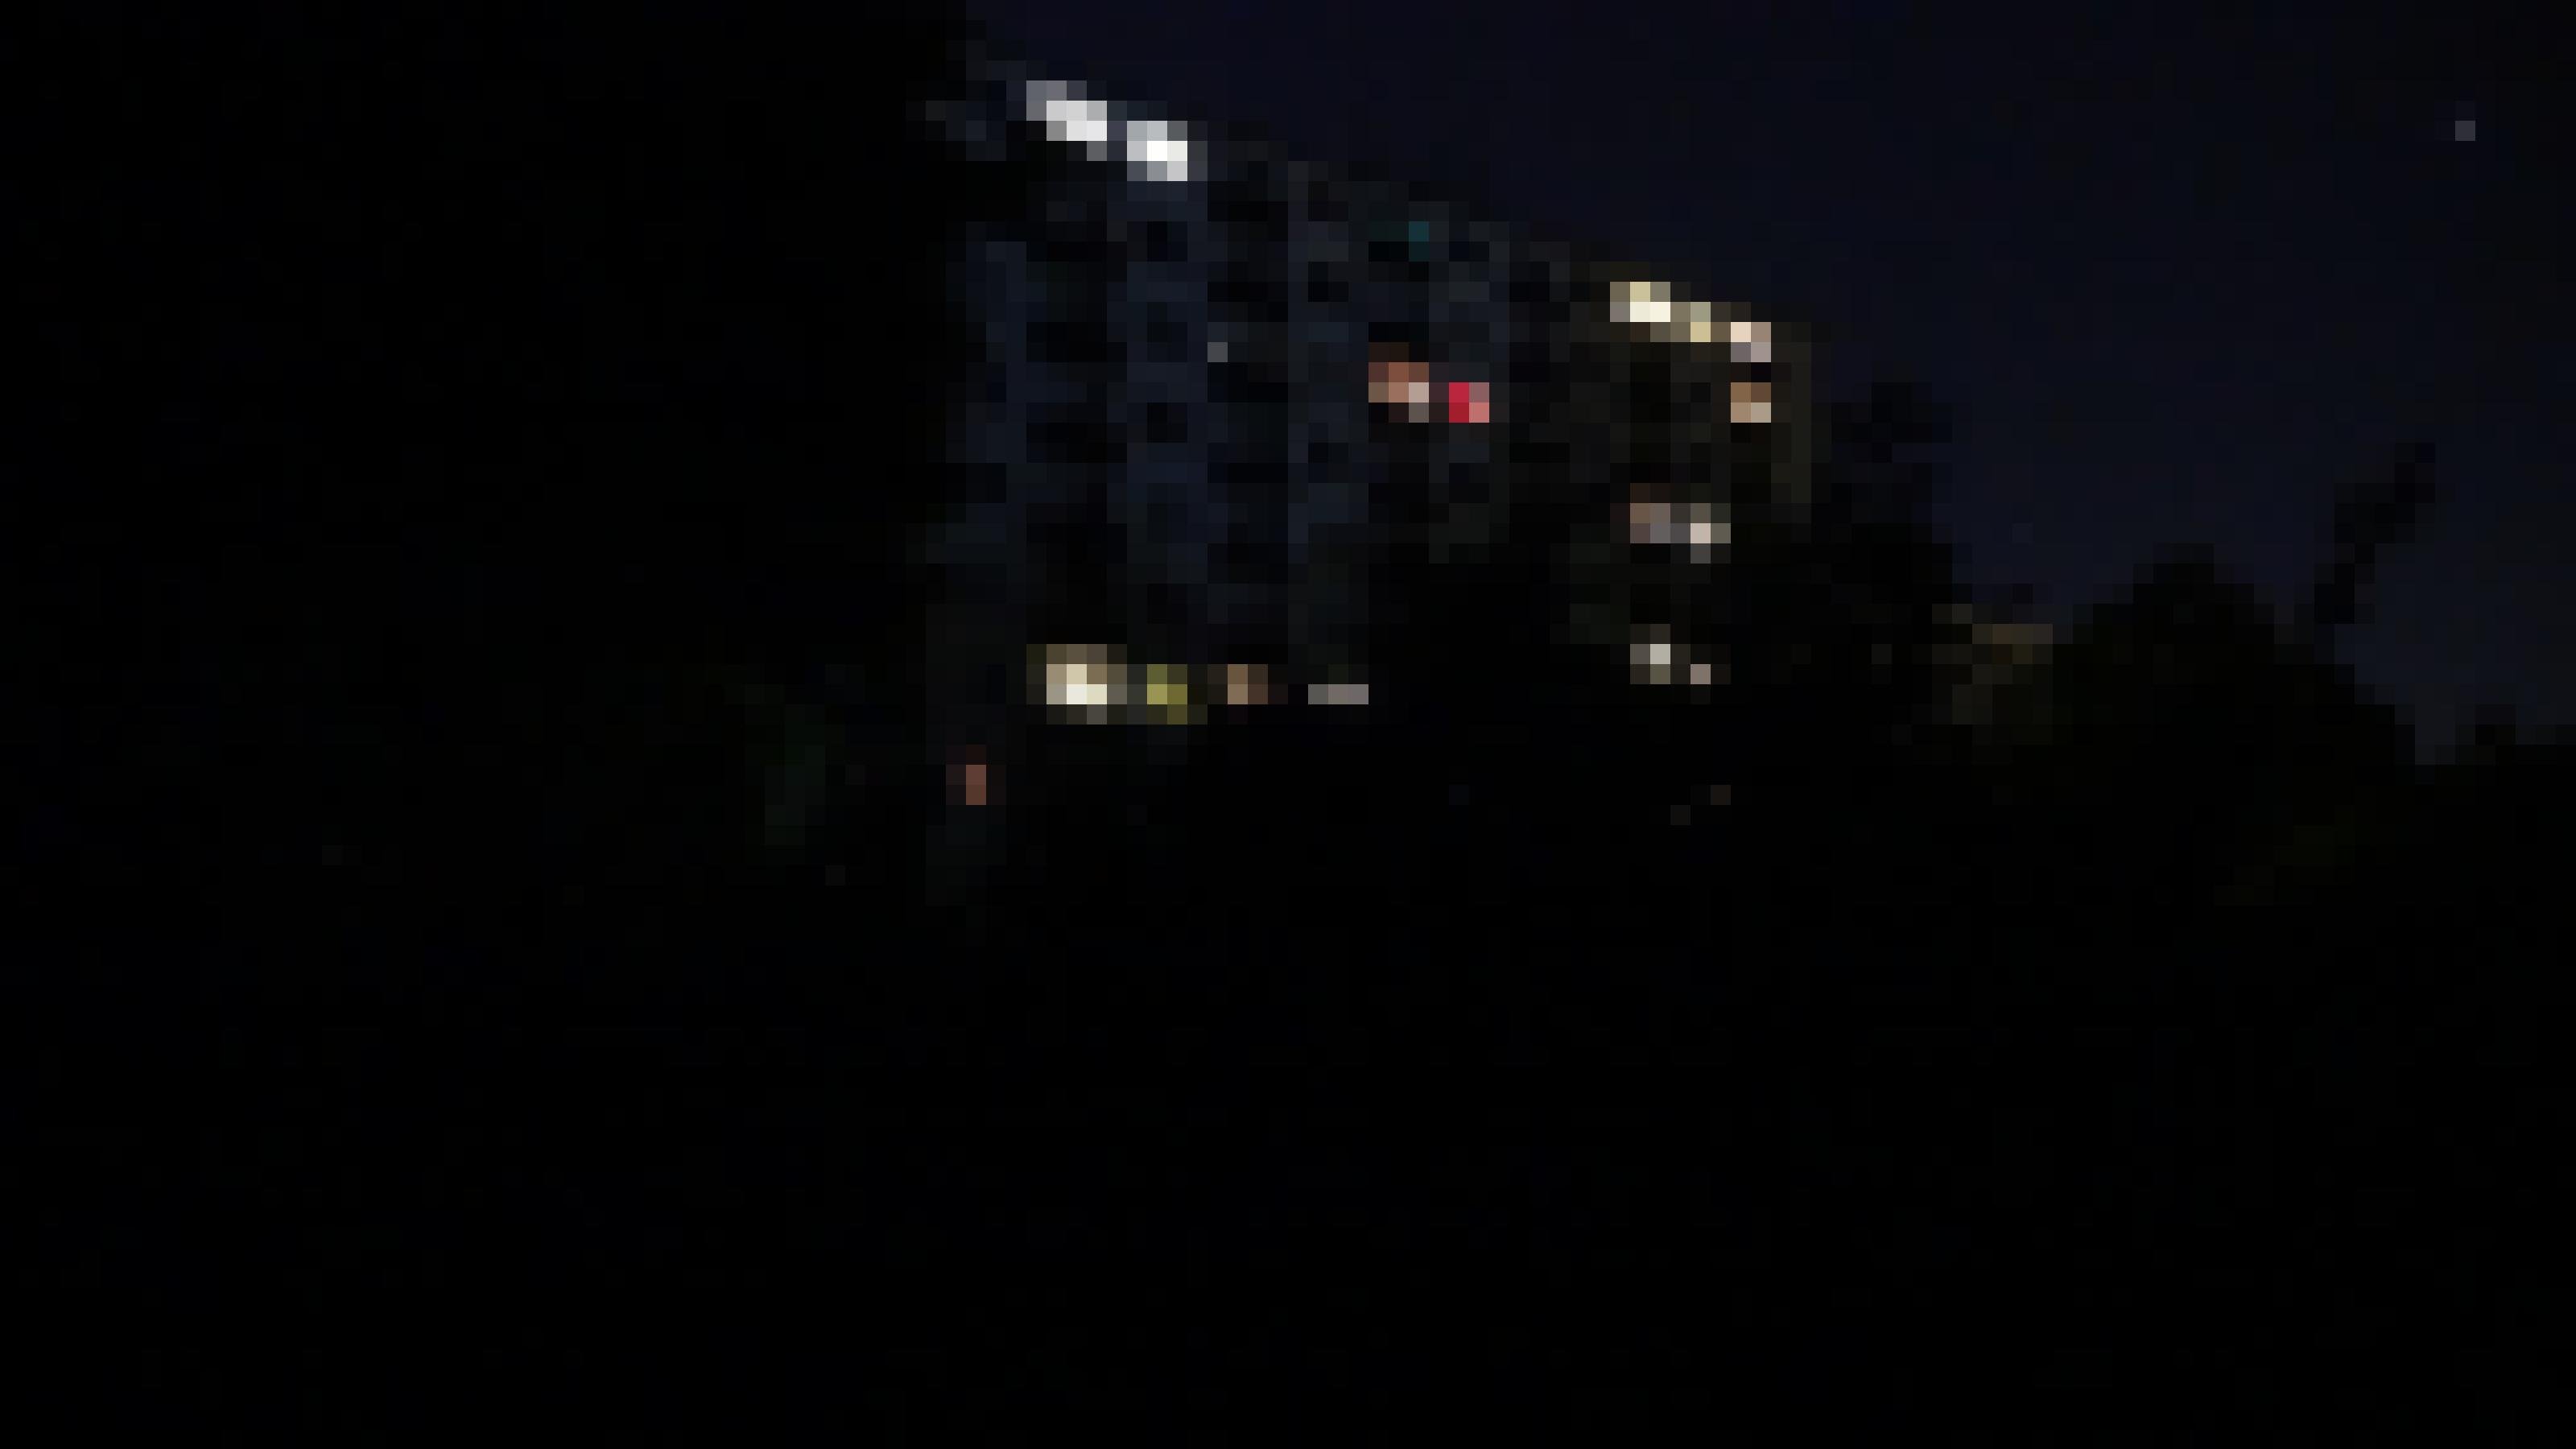 Ein mehrstöckiges Wohnhaus in der Nacht.